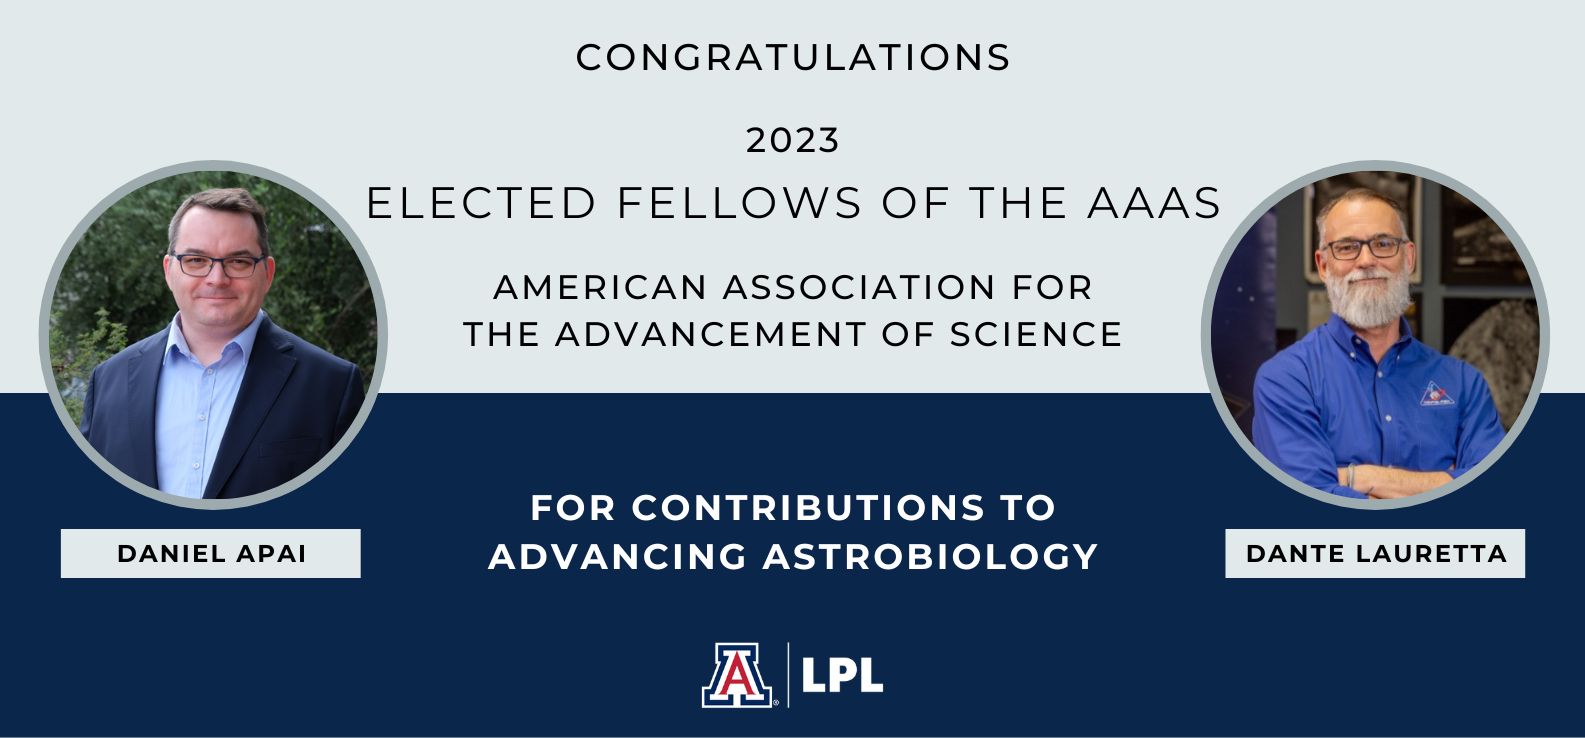 Daniel Apai and Dante Lauretta named AAAS Fellows